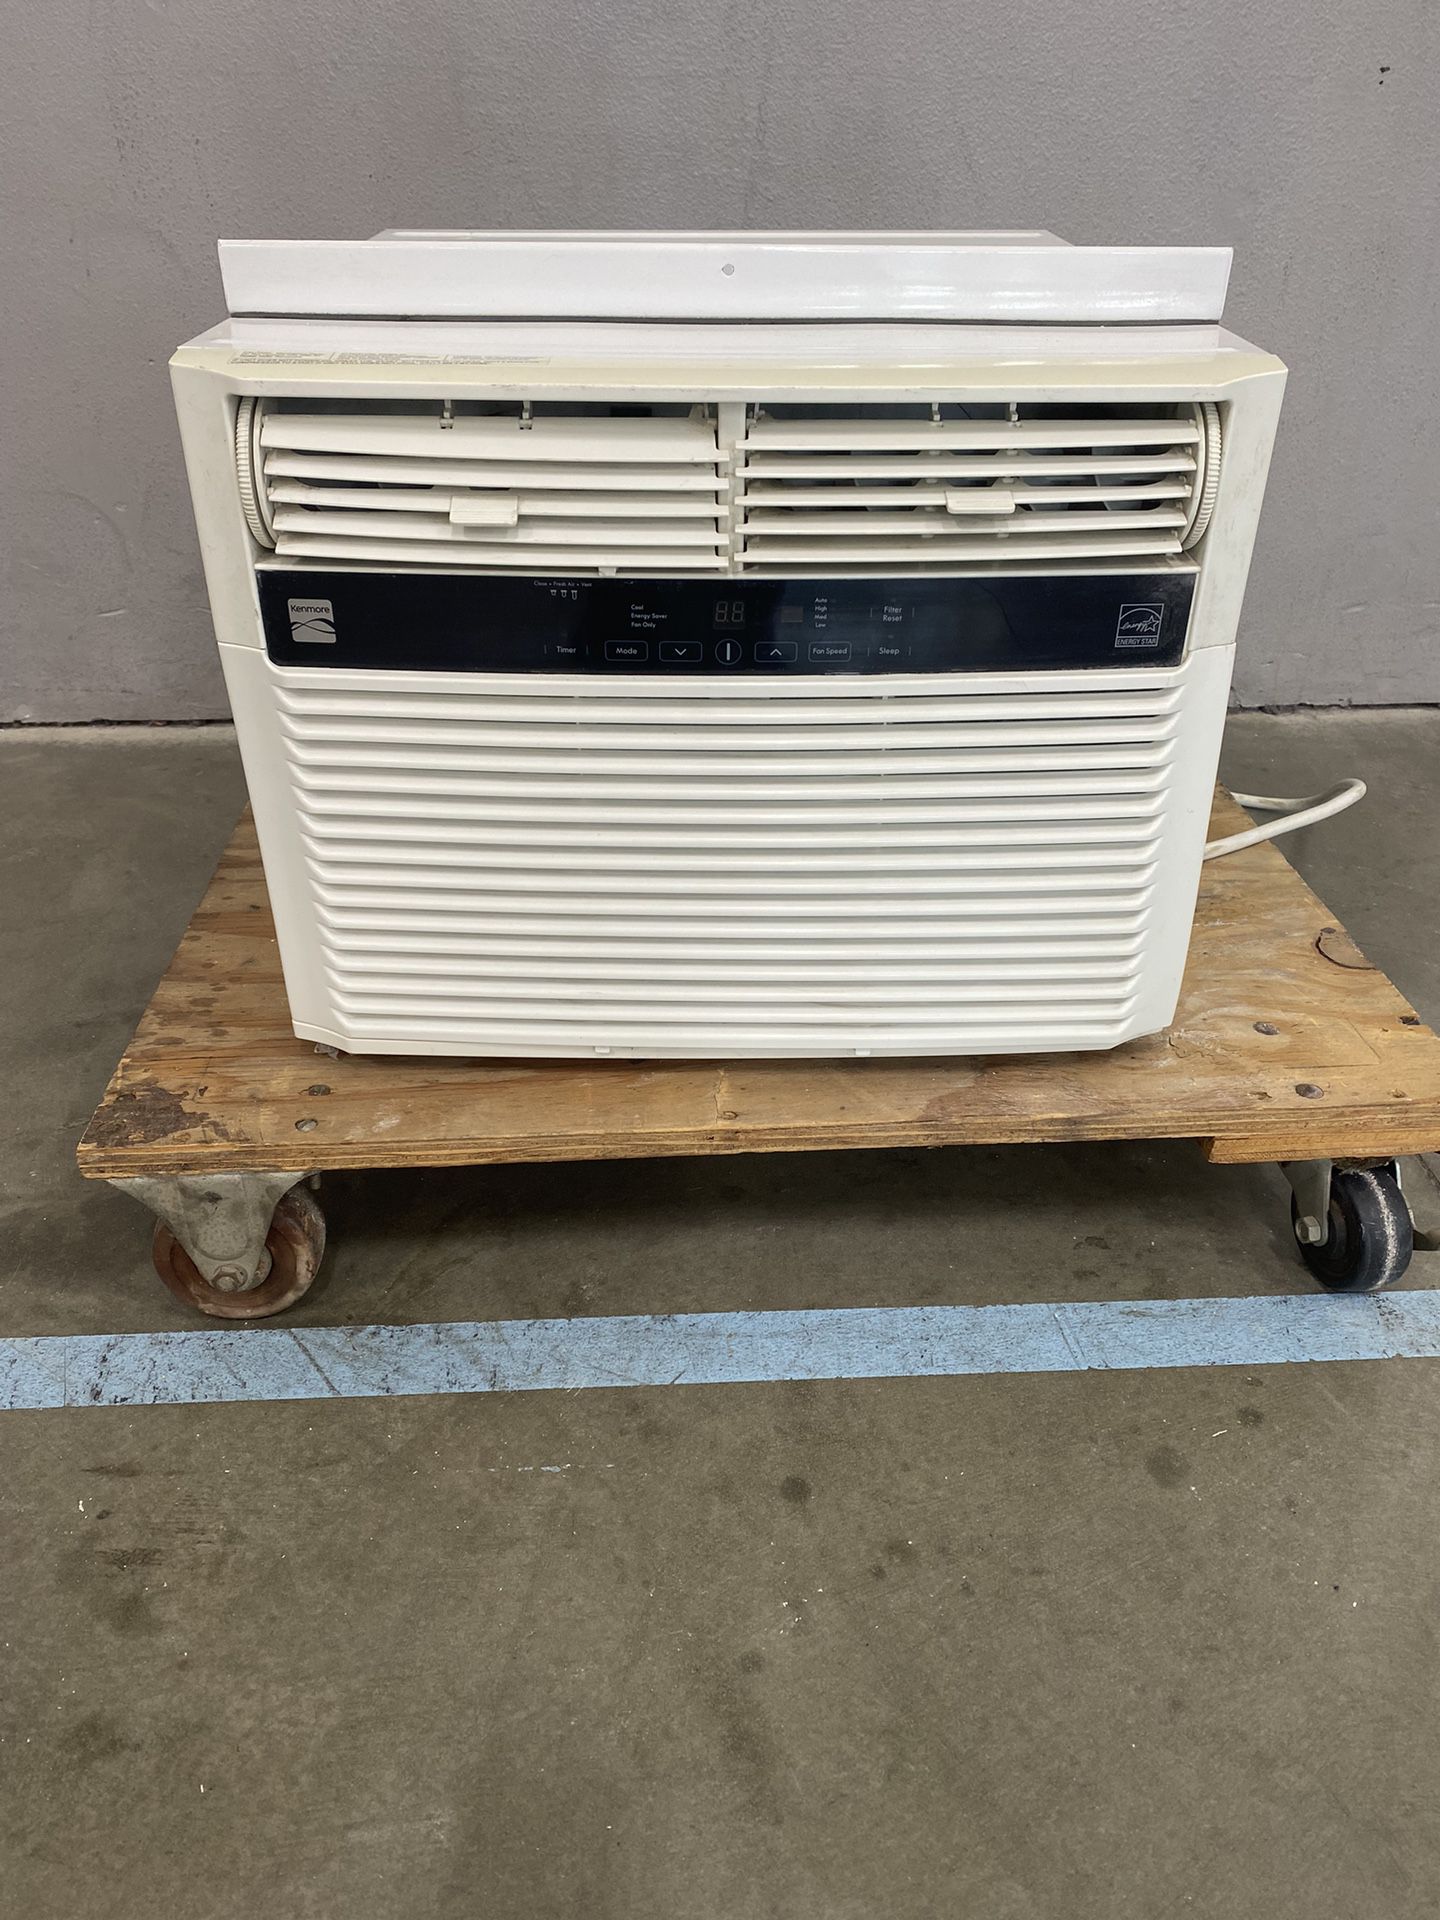 Kenmore Air Conditioner $100 OBO